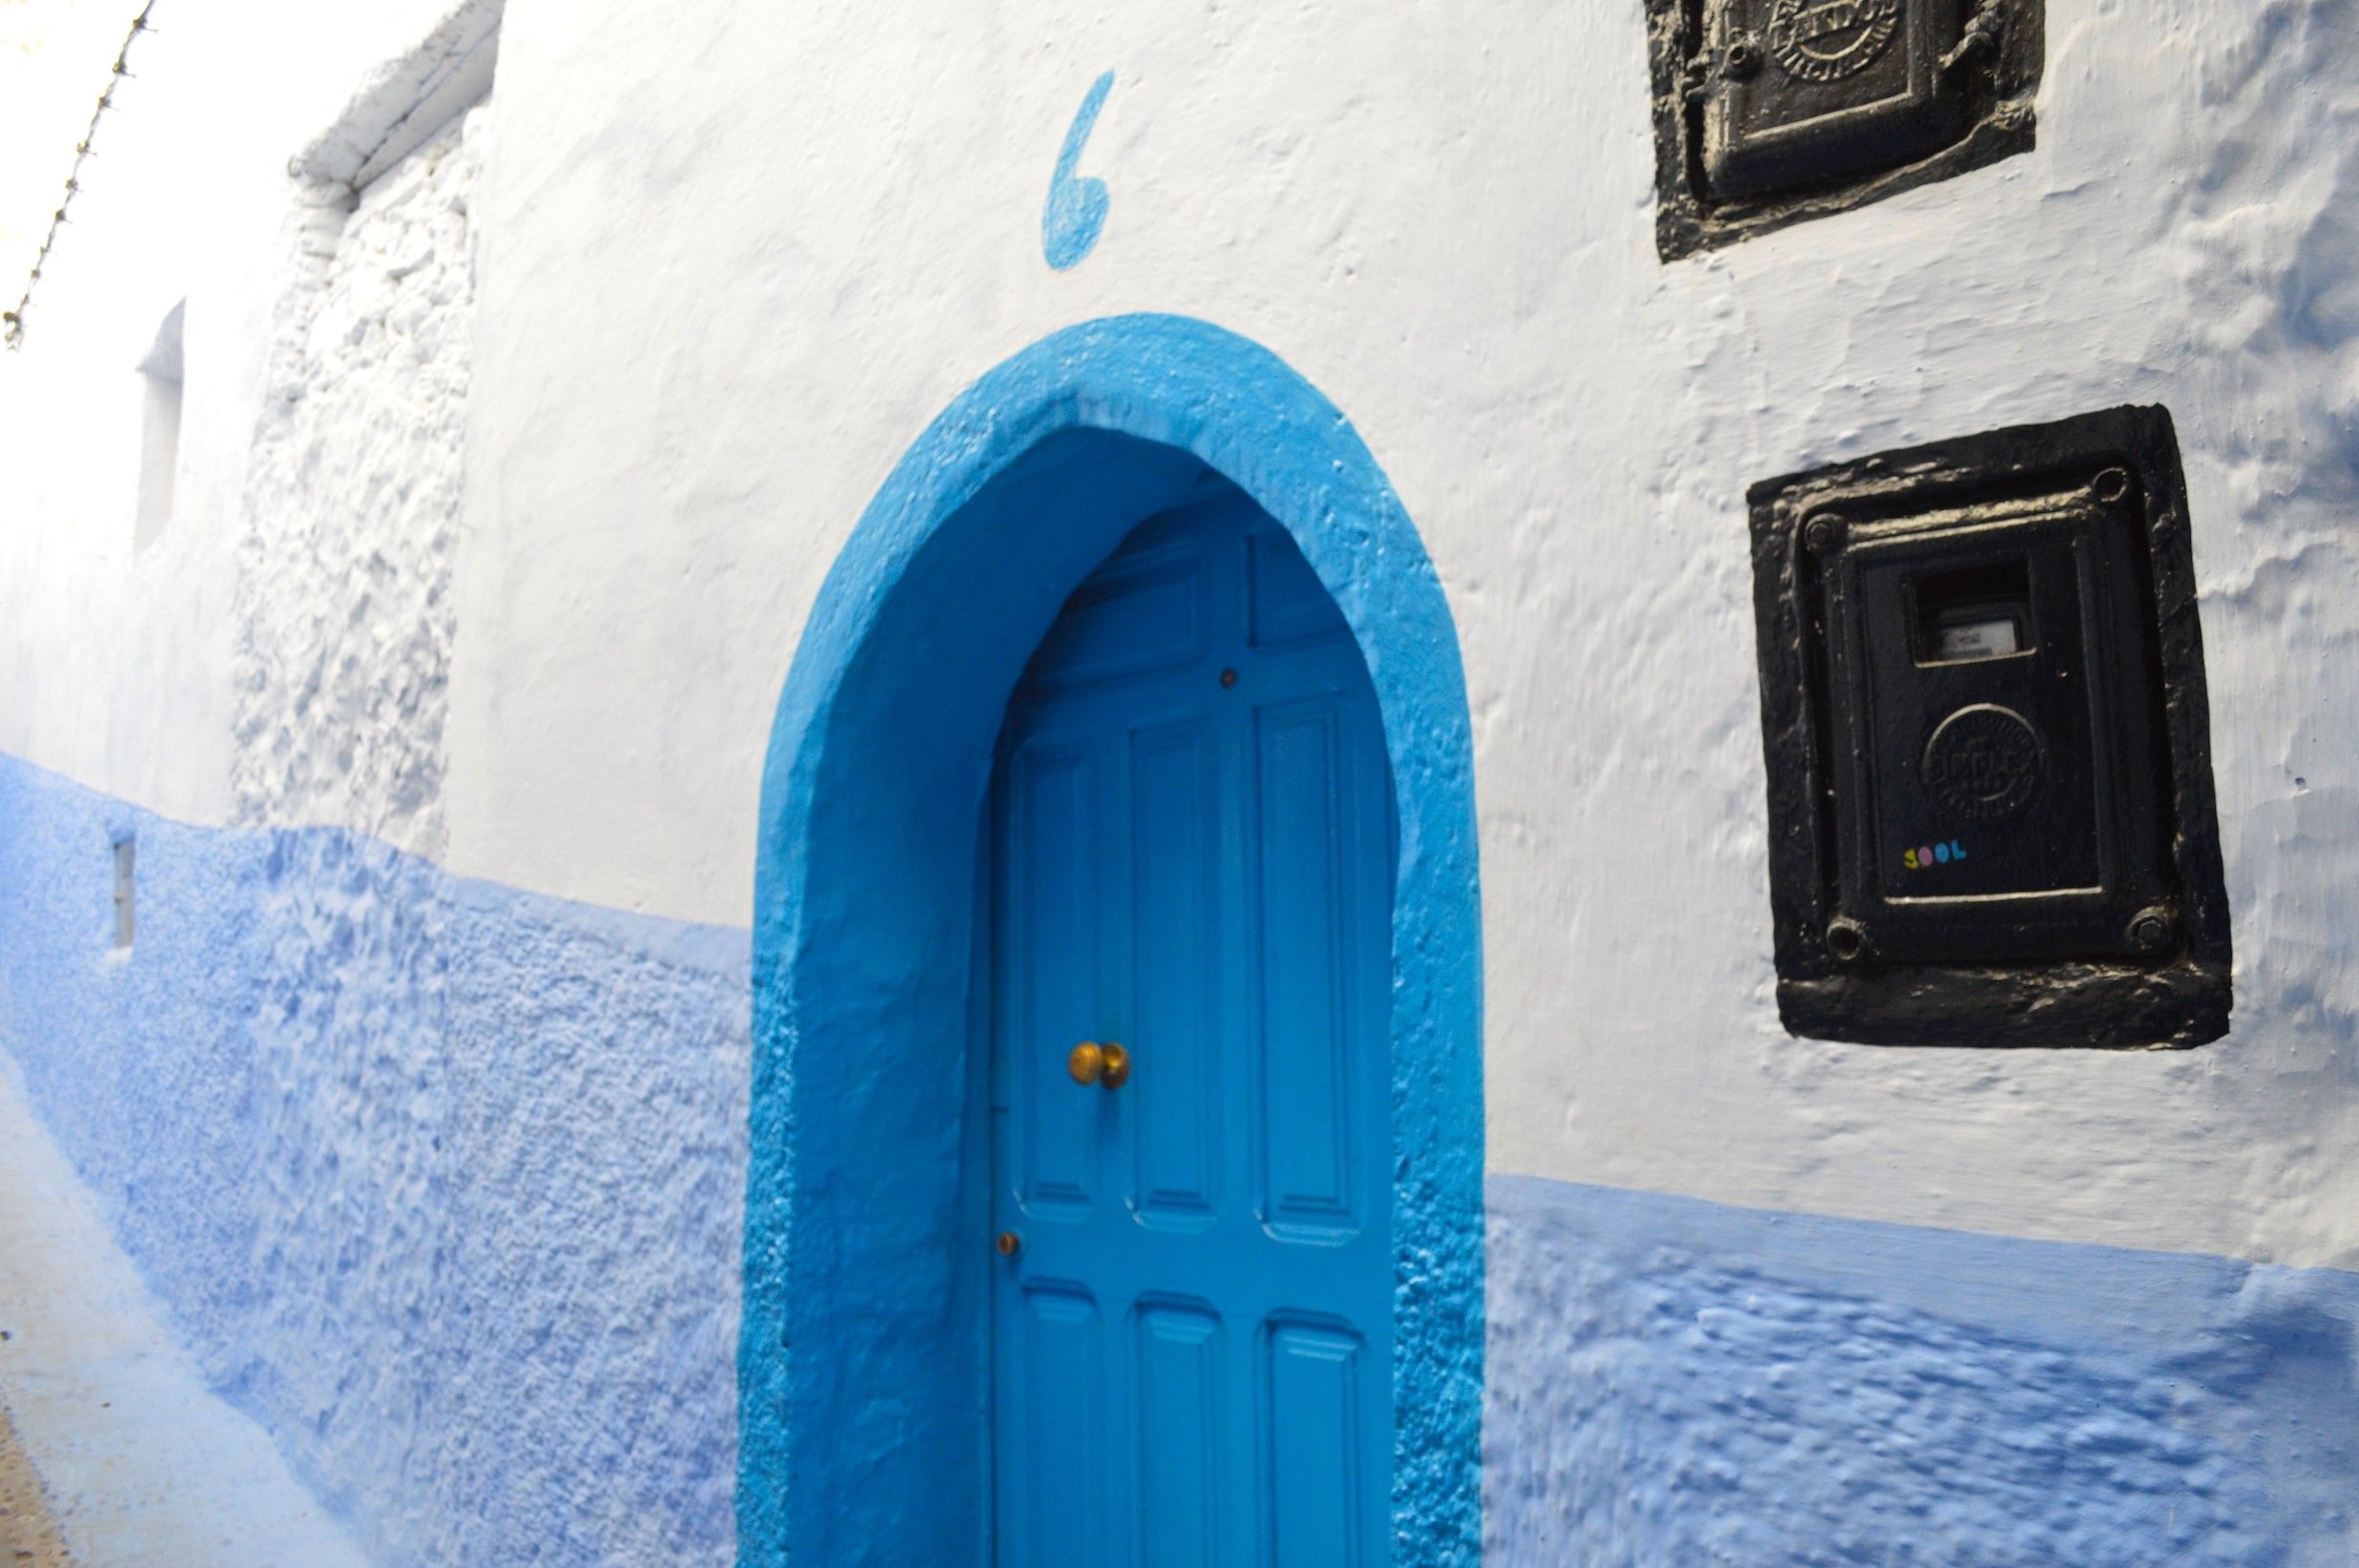 モロッコ「シャフシャウエン」の見どころ大特集！女子一人旅にもぴったりな幻惑の青い町の観光スポットとは